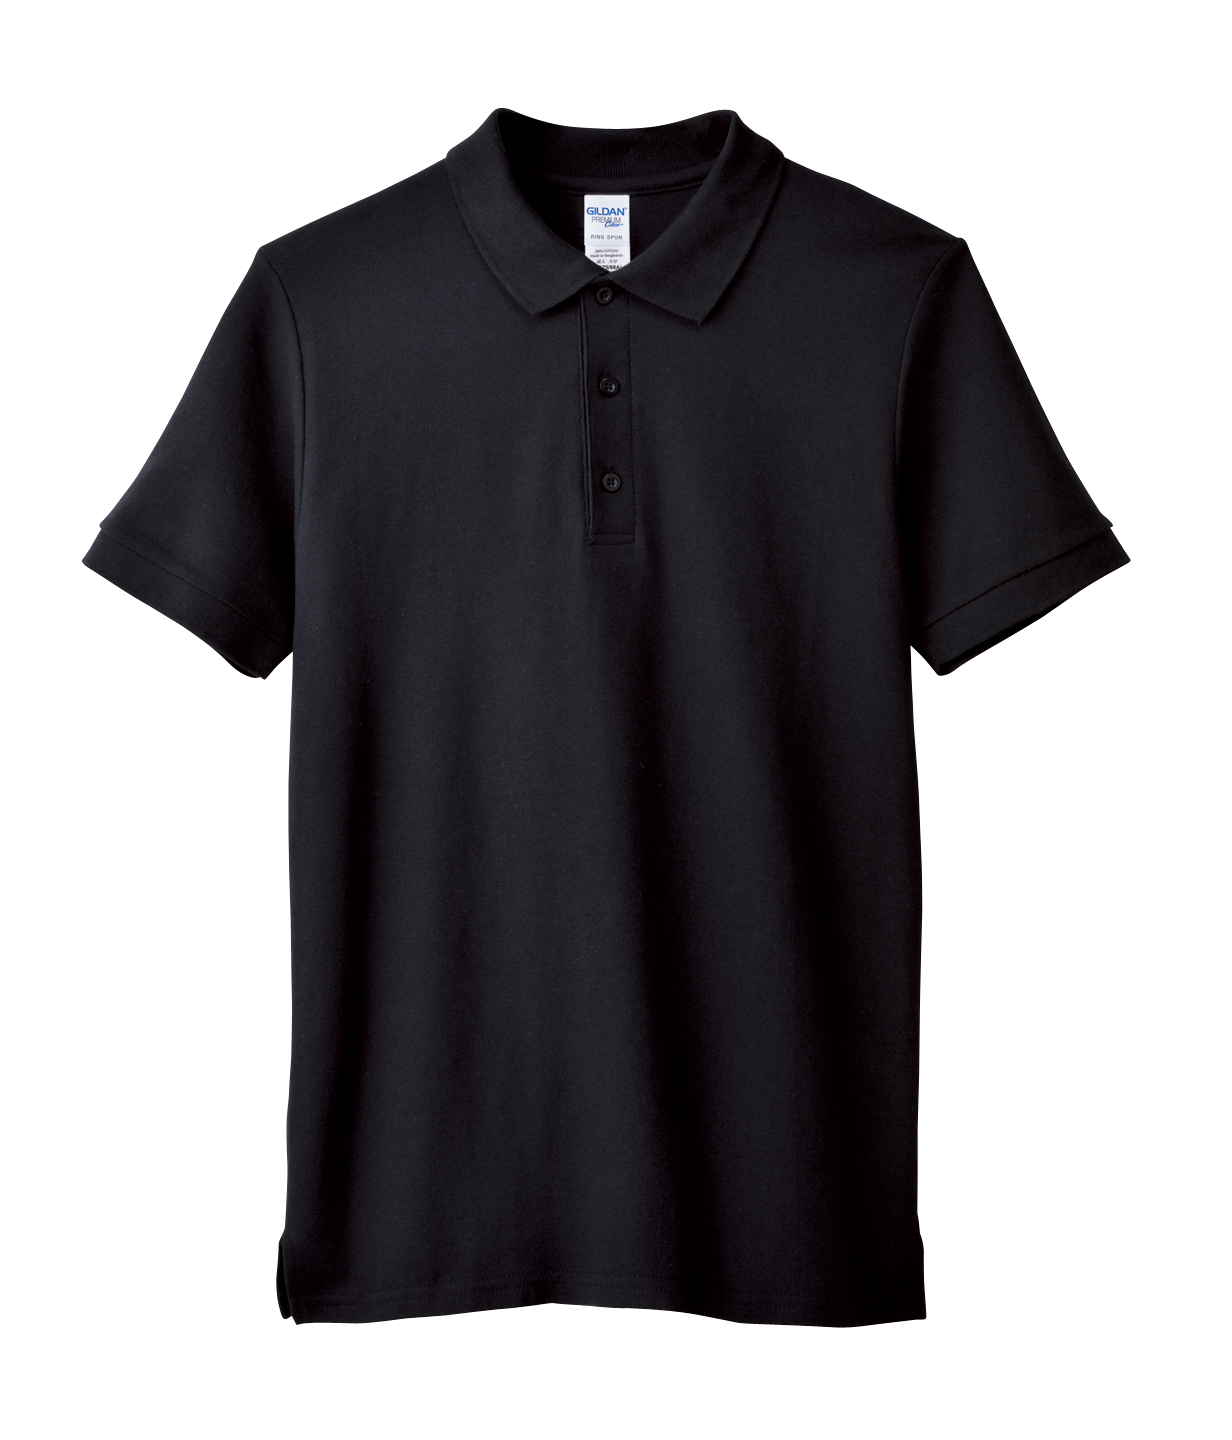 GILDAN Premium Cotton Polo 6800 220GSMCotton Unisex T-Shirt Best Men Women Adult Plain Cotton Double Pique Sport Shirt Comfort Polo Tee Group B SPORT GREY/BLACK/RED/ORANGE/DAISY 6800